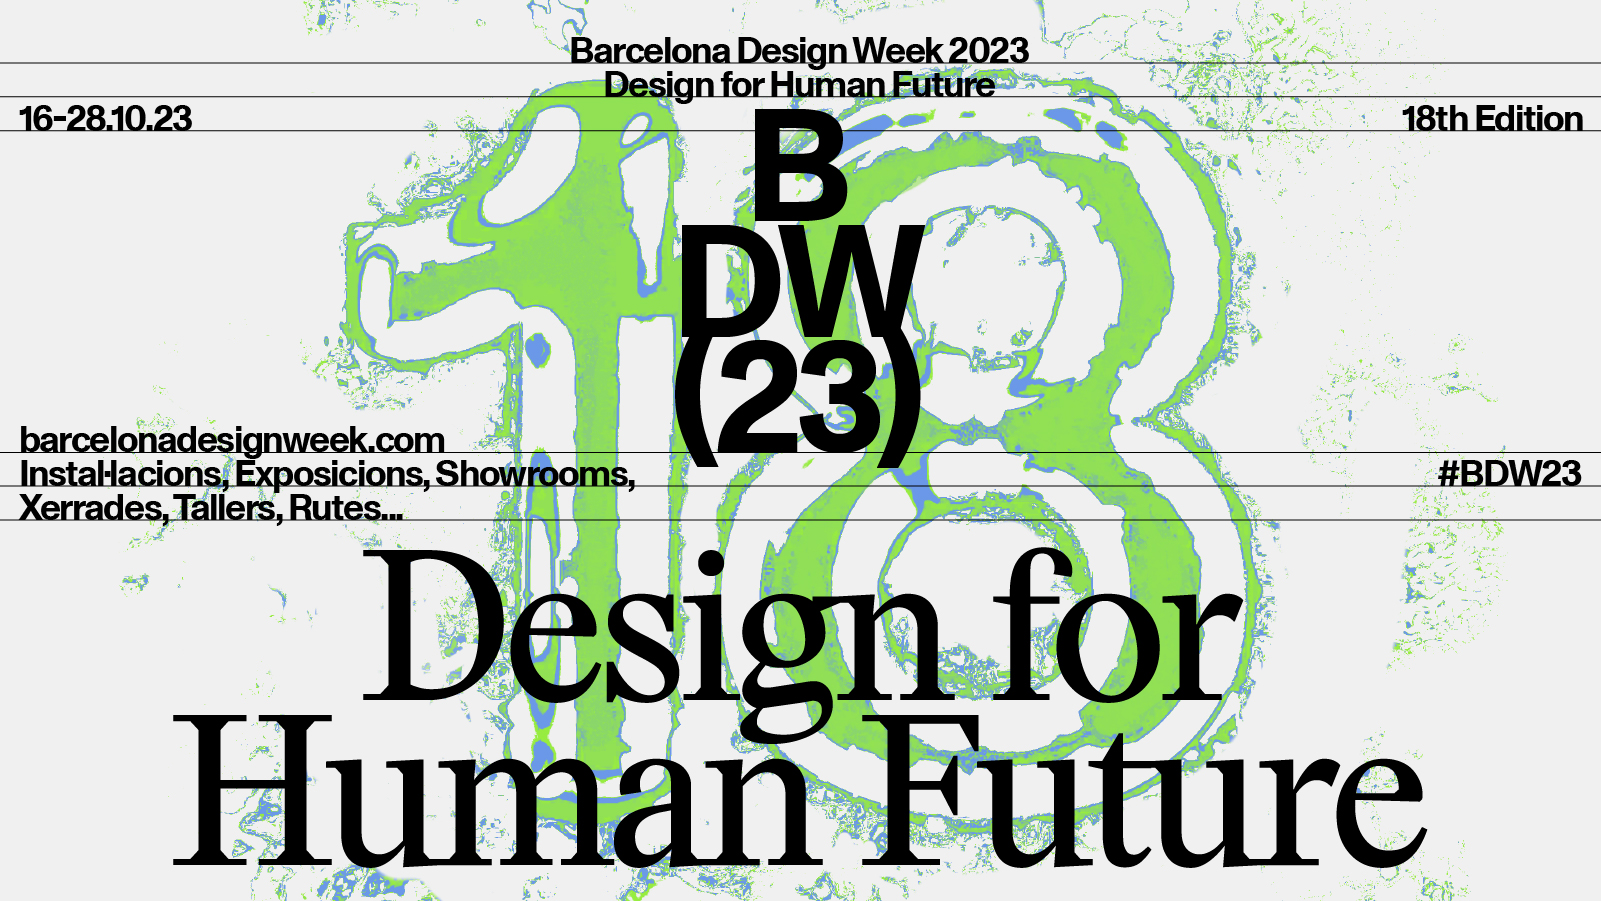 La Barcelona Design Week vuelve del 16 al 28 de octubre | Barcelona centro de Diseño